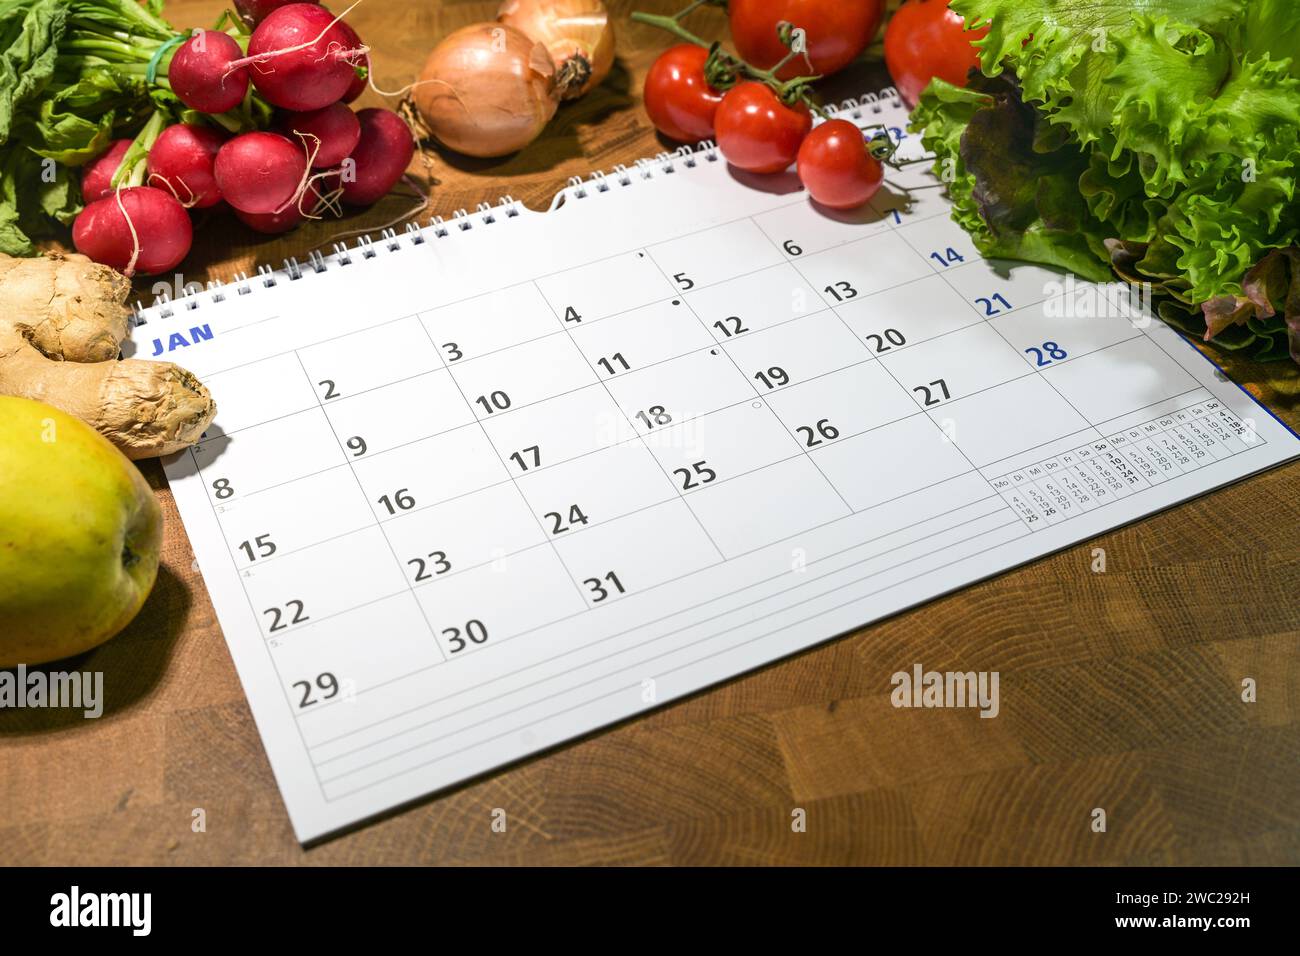 Kalender mit Monat Januar umgeben von frischem Gemüse und Obst auf einem Holztisch, Neujahrsziele, gesunde Lebensmittel zu essen und Gewicht zu verlieren, Kopie s Stockfoto